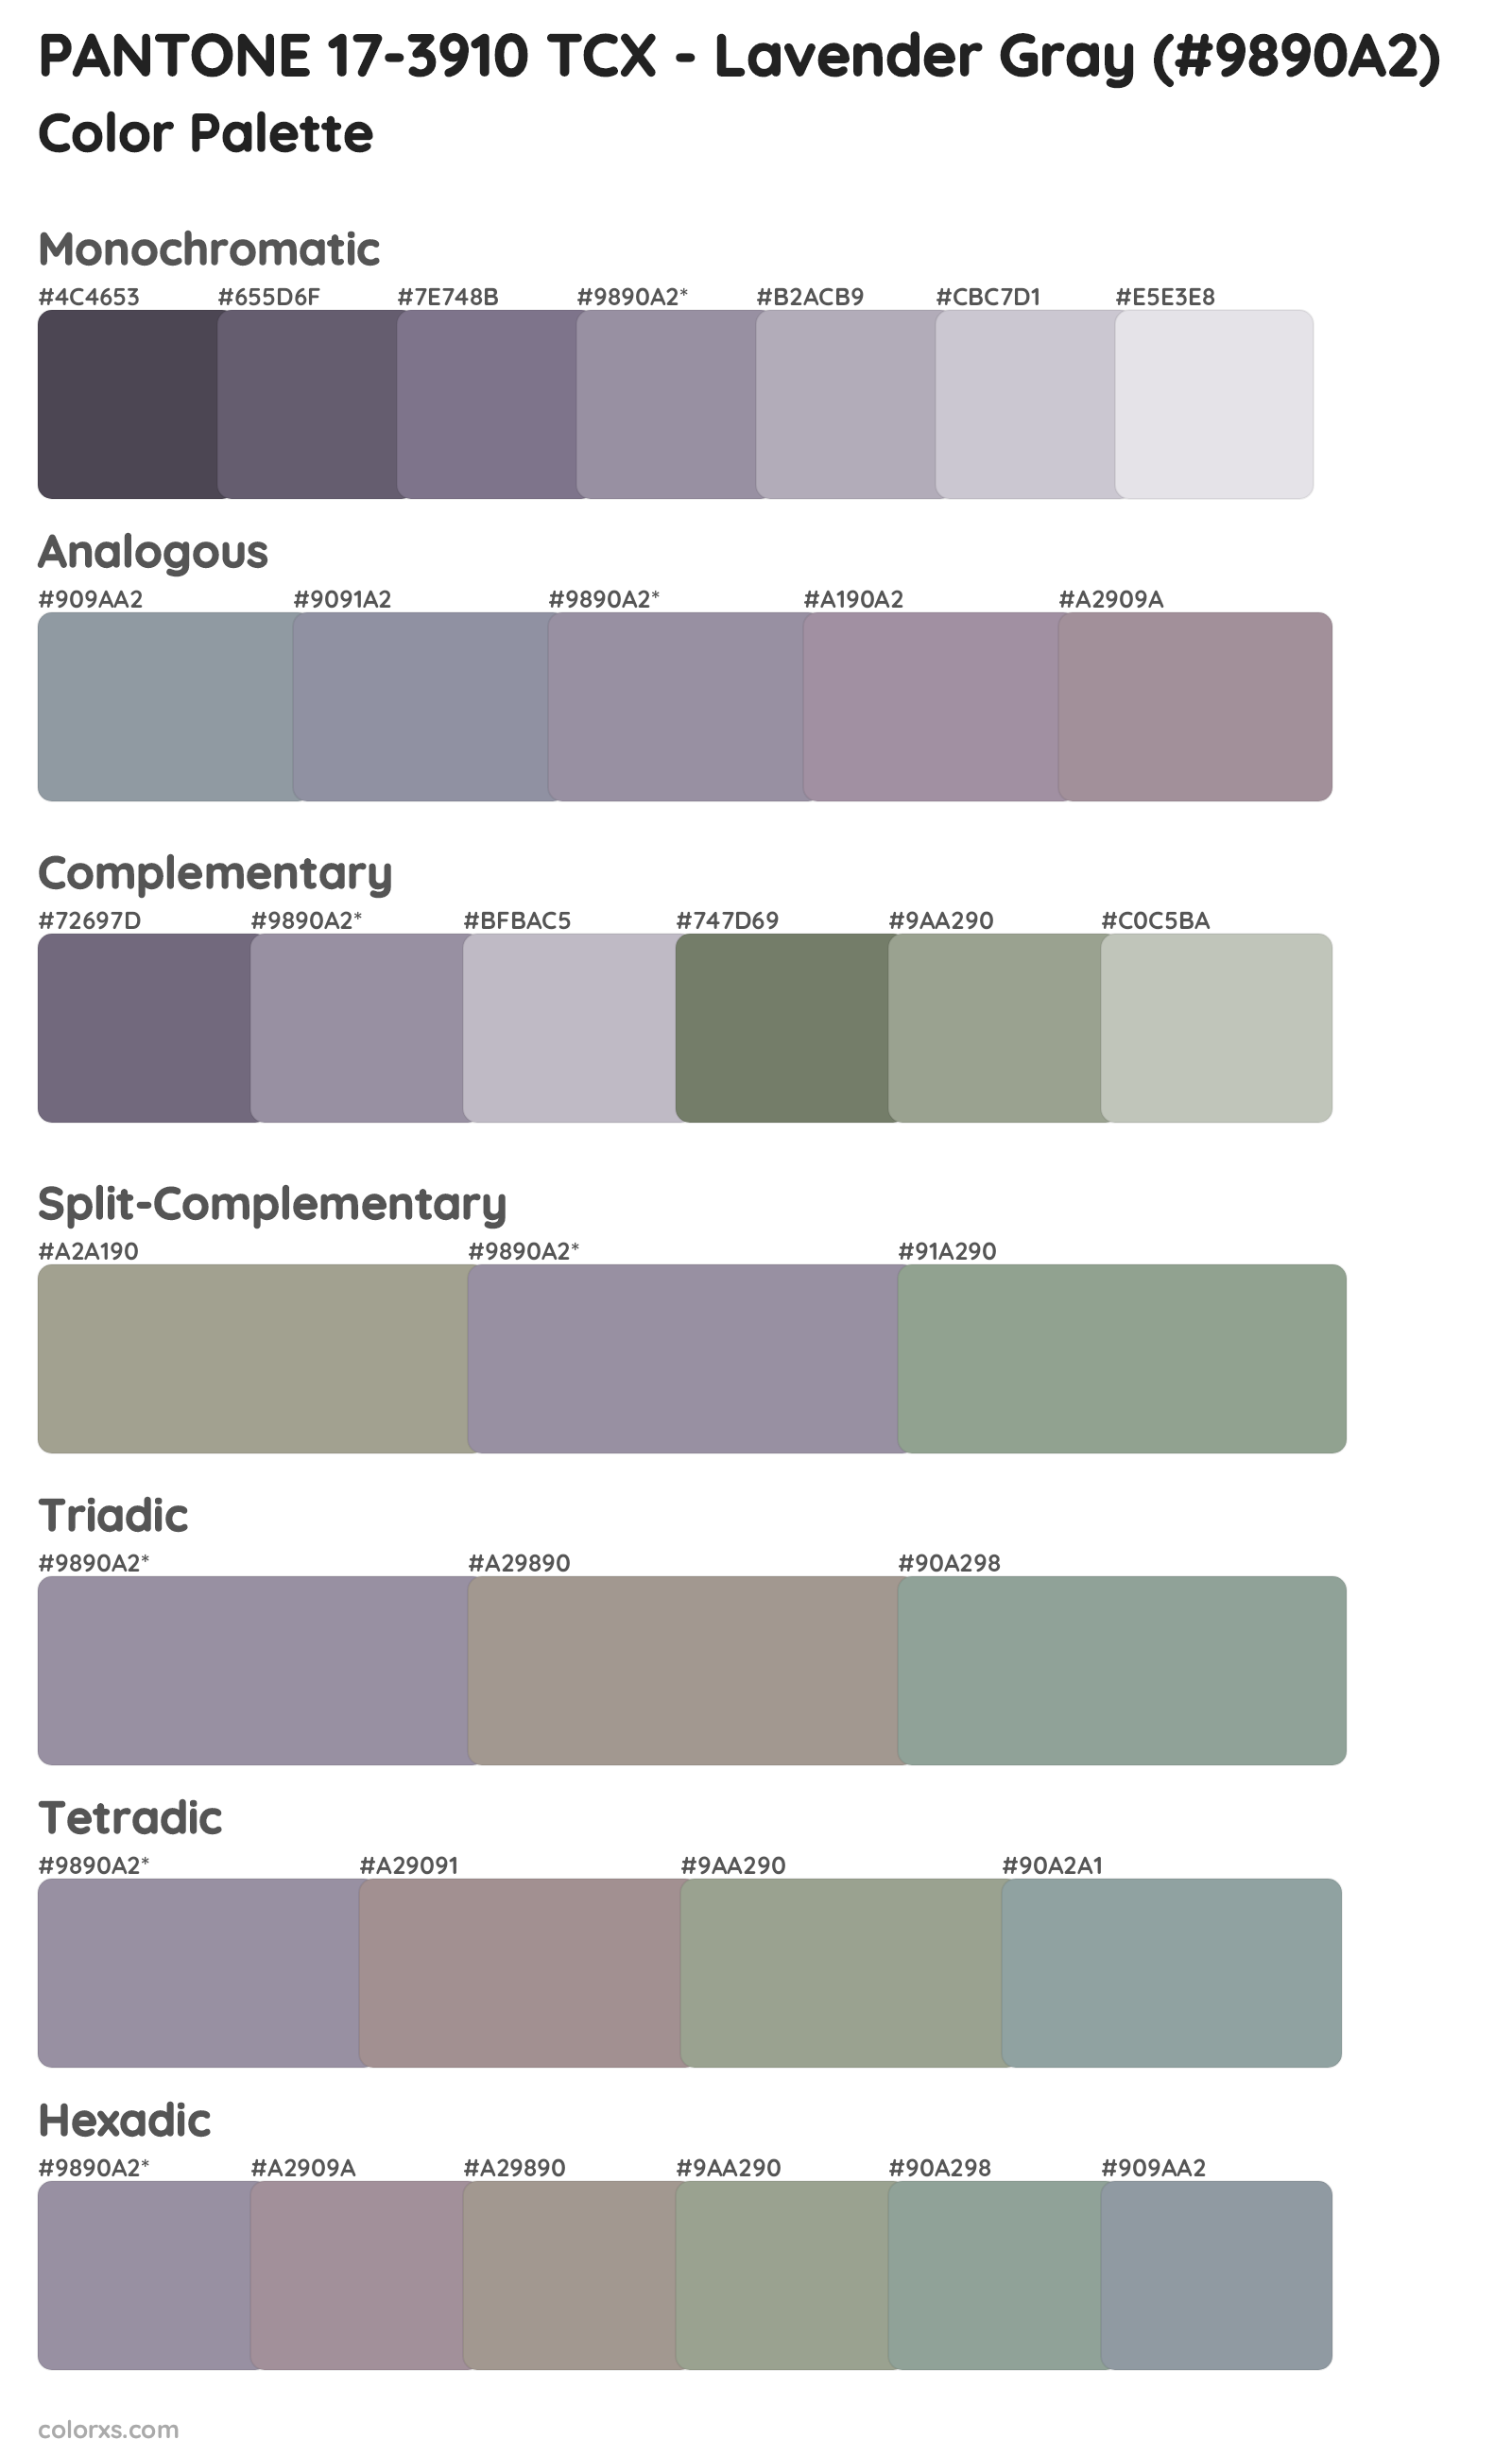 PANTONE 17-3910 TCX - Lavender Gray Color Scheme Palettes